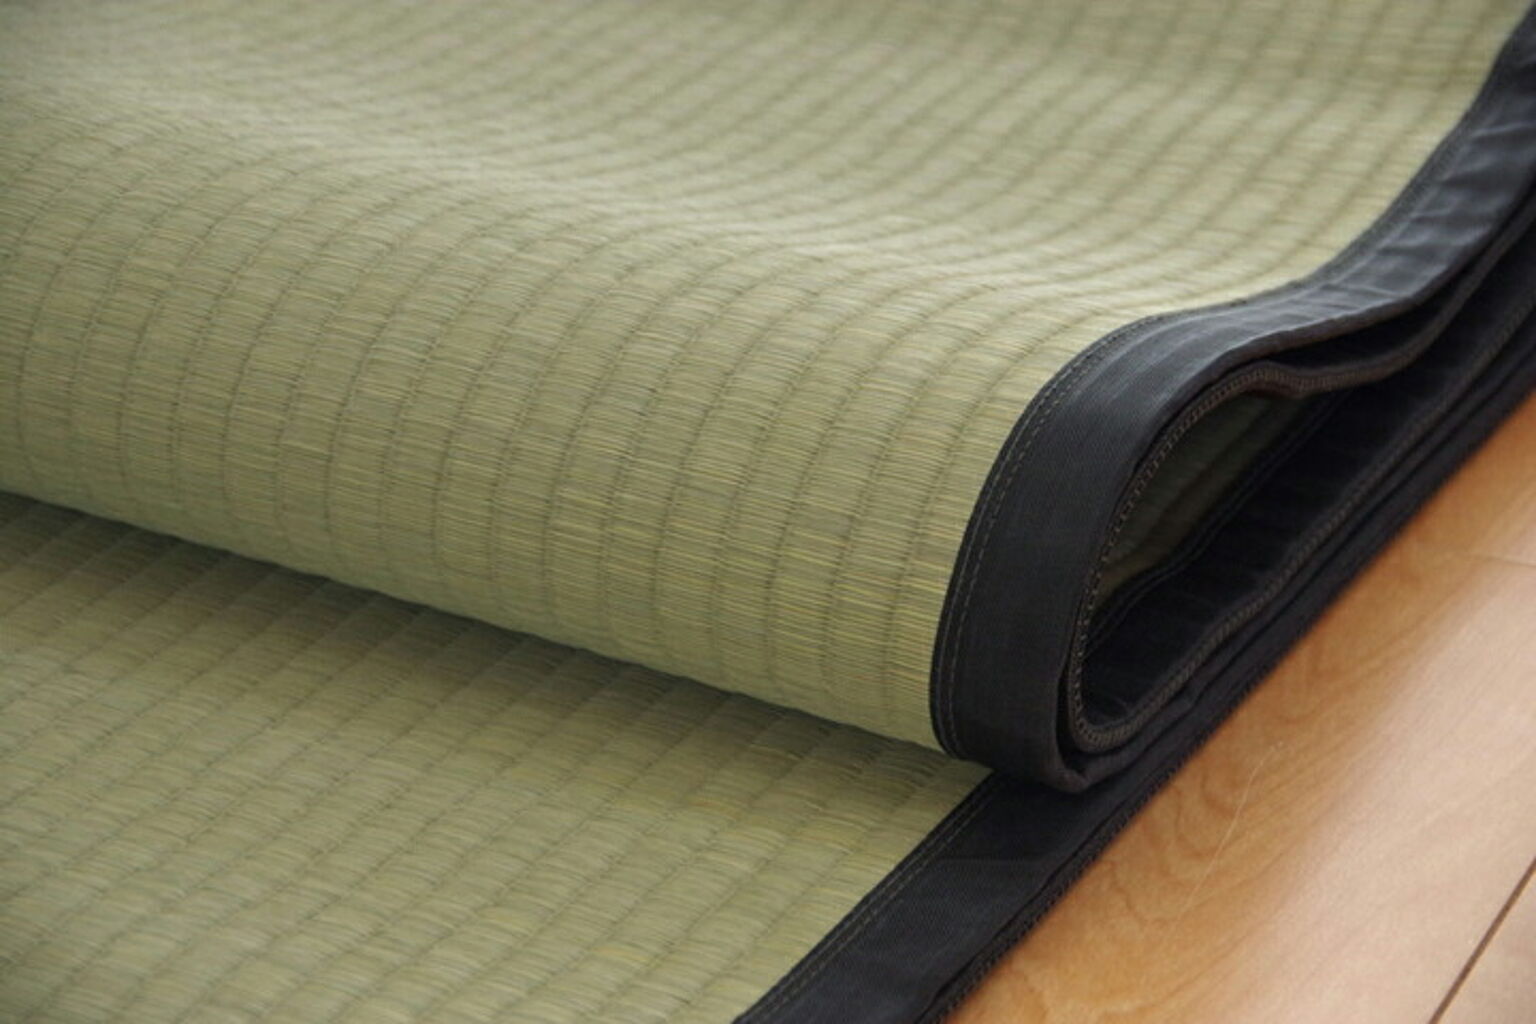 清正 本間6畳 純国産い草カーペット 約286×382cm 熊本県八代産使用